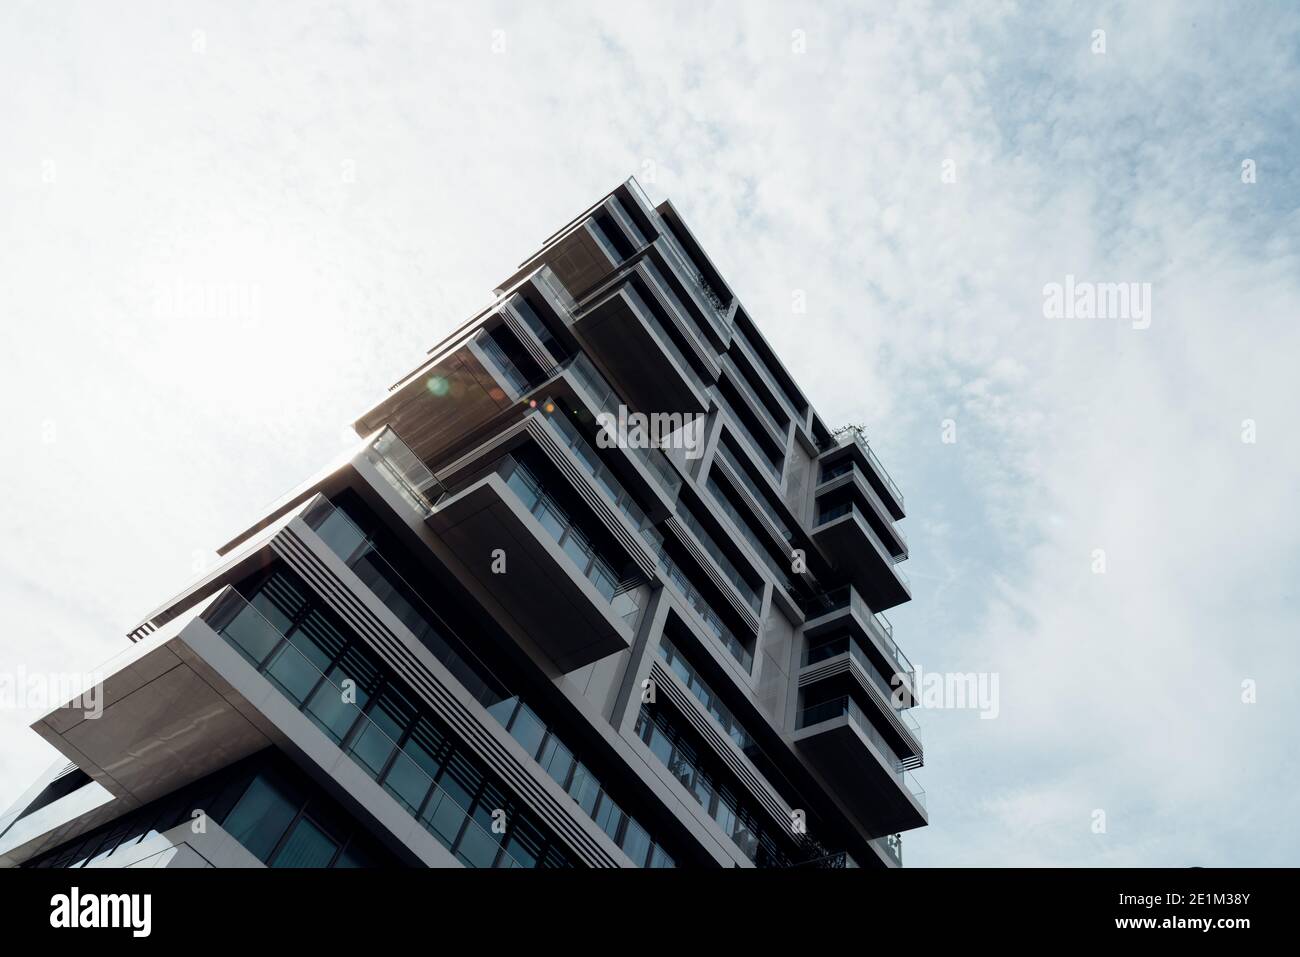 Berlino, Germania - 29 luglio 2019: Grattacielo residenziale di lusso contro il cielo. Concetto di controllo o regolamento del noleggio Foto Stock